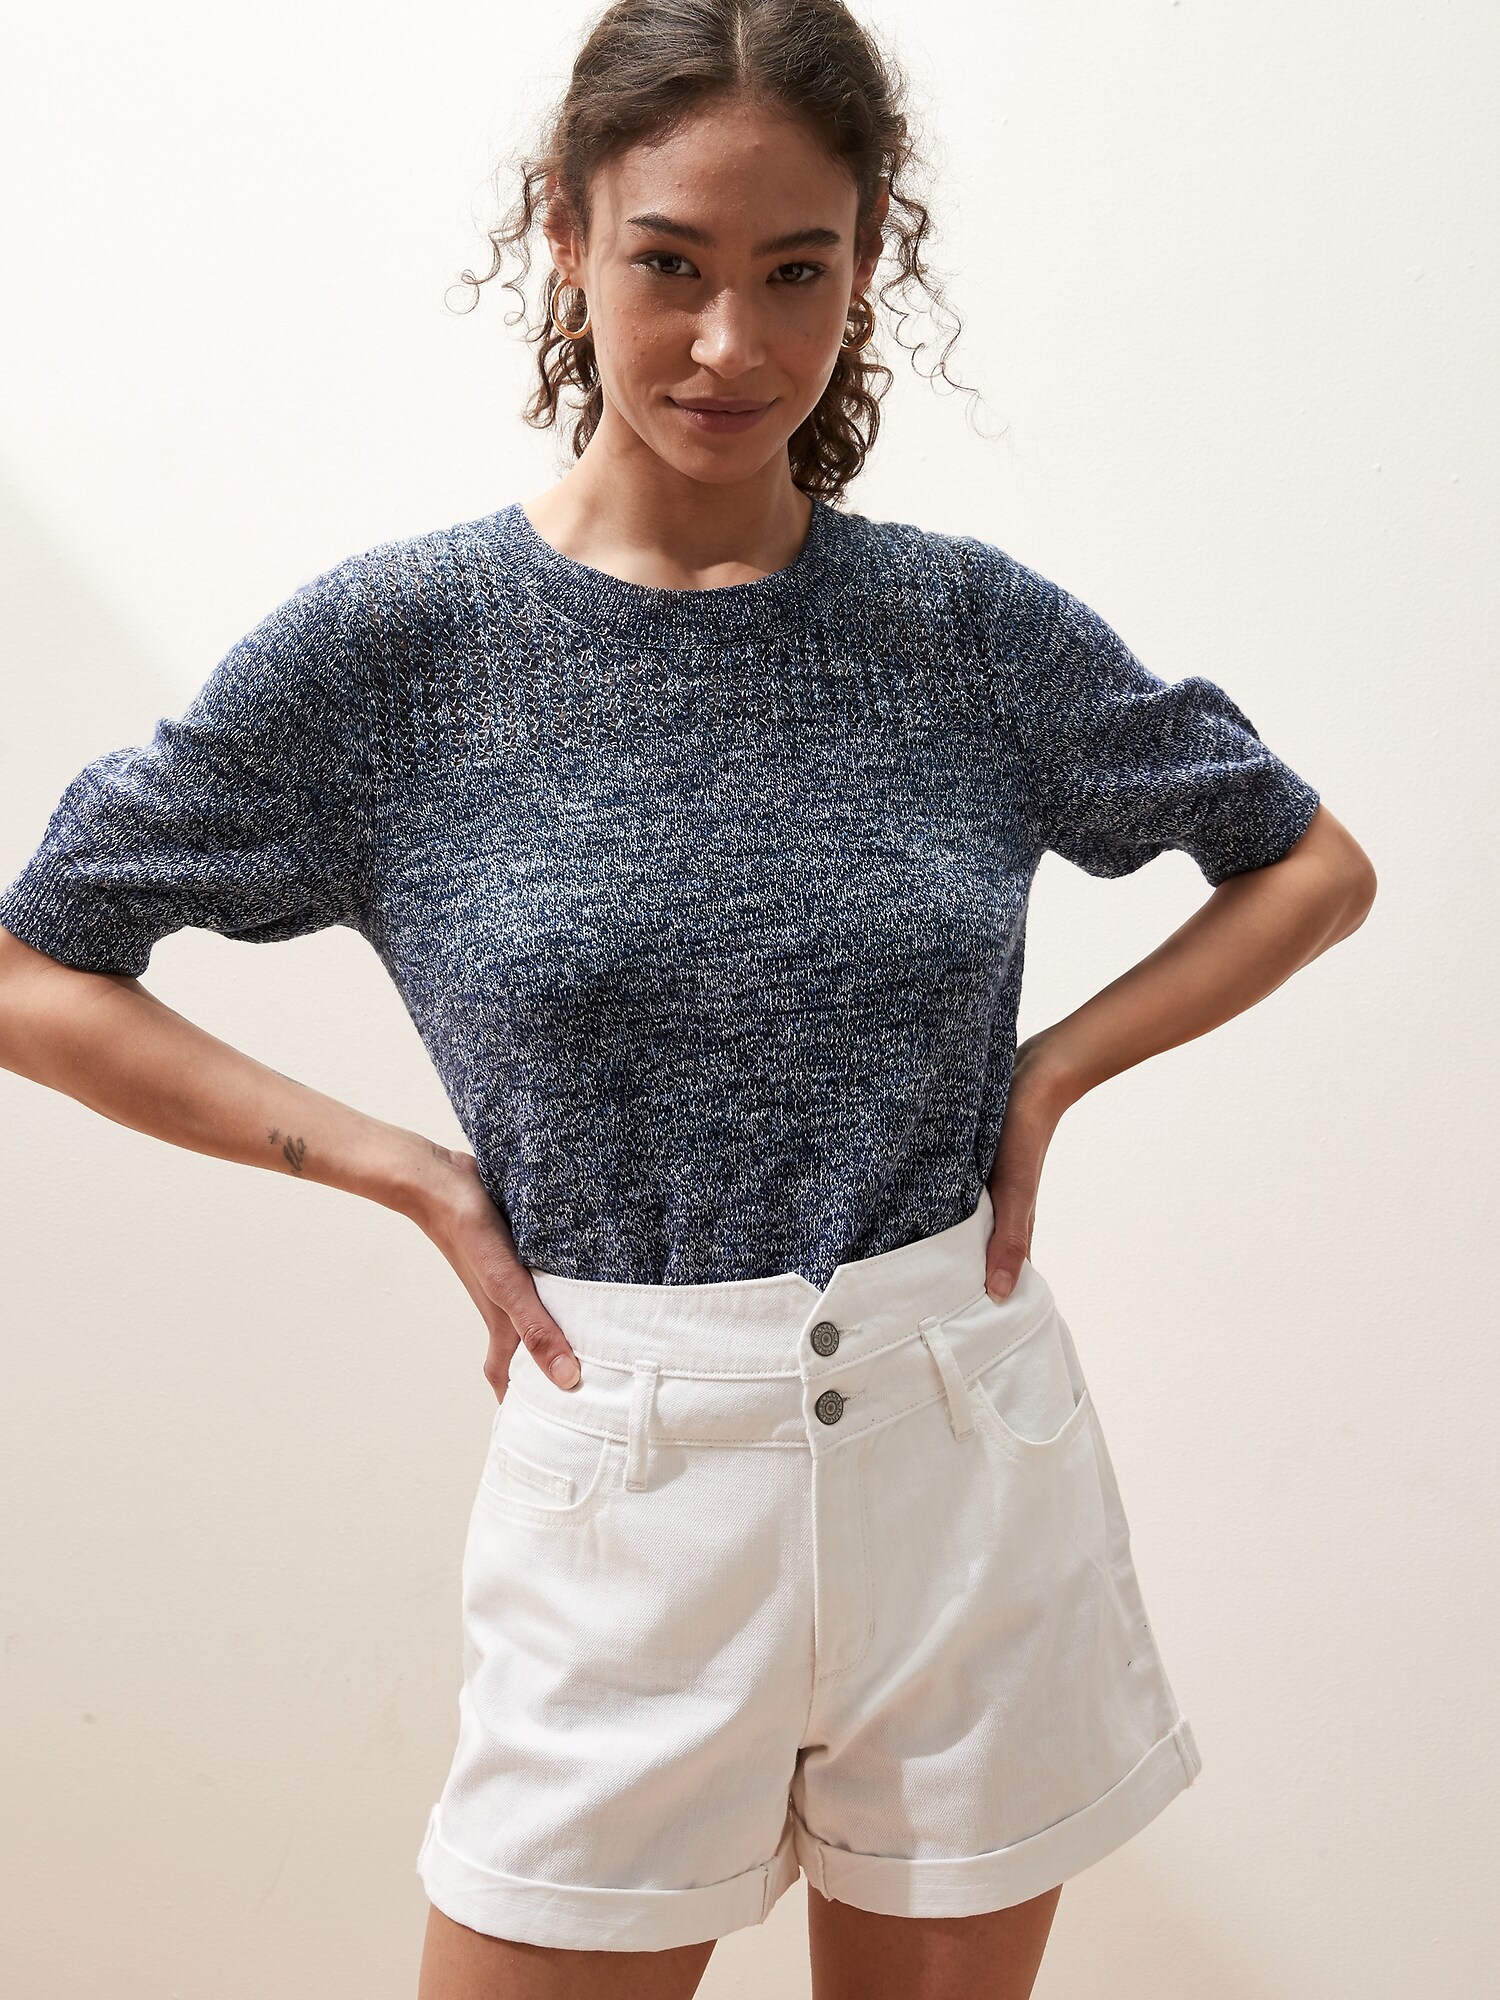 Short-Sleeve Marled Sweater